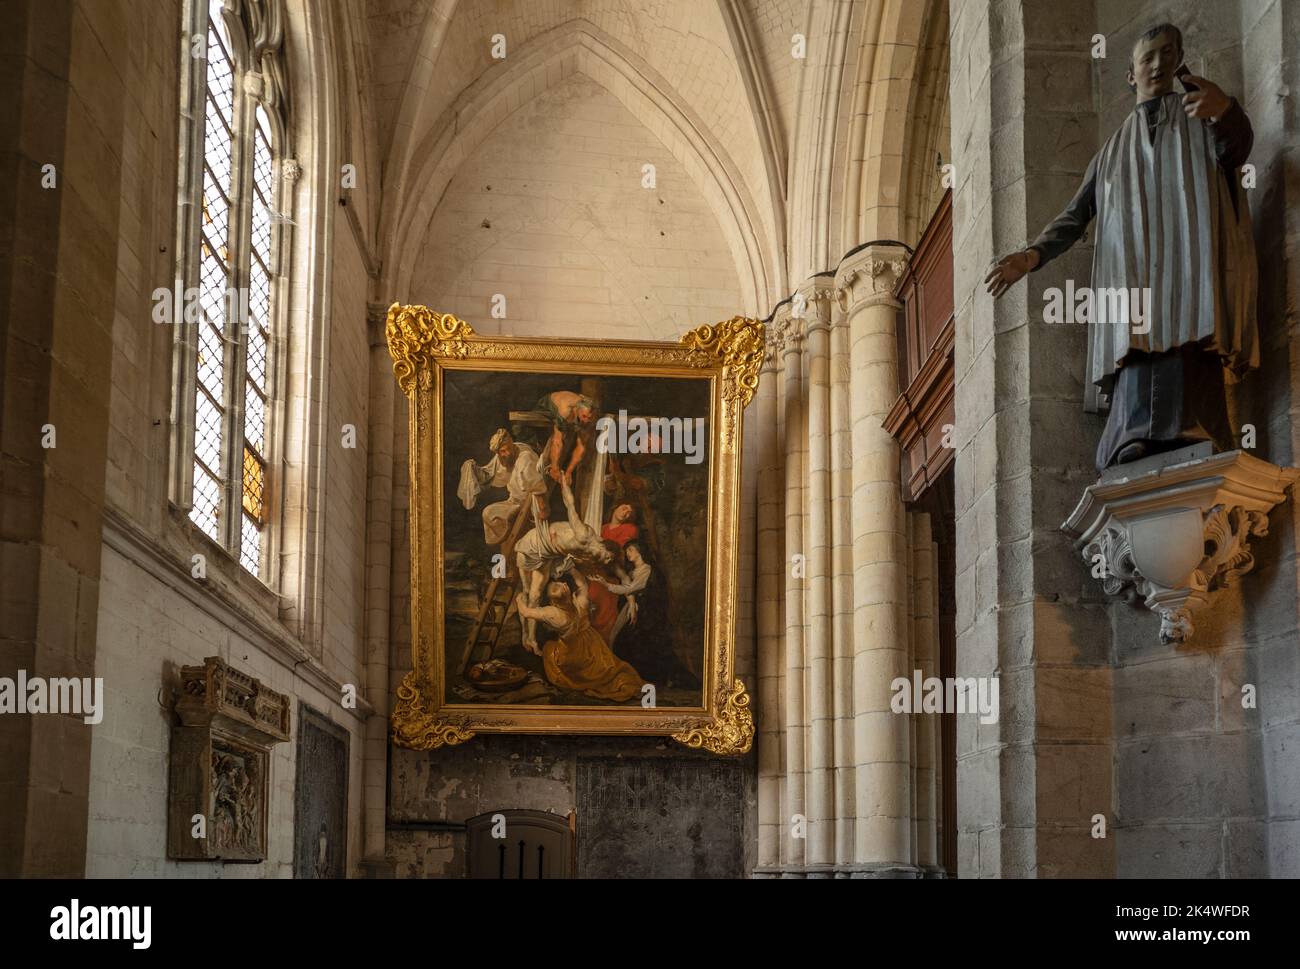 Cathédrale Saint-Omer pas de Calais France septembre 2022 peinture de la descente de la Croix par Peter Paul Rubens à la cathédrale Saint-Omer, 1616 Sai Banque D'Images